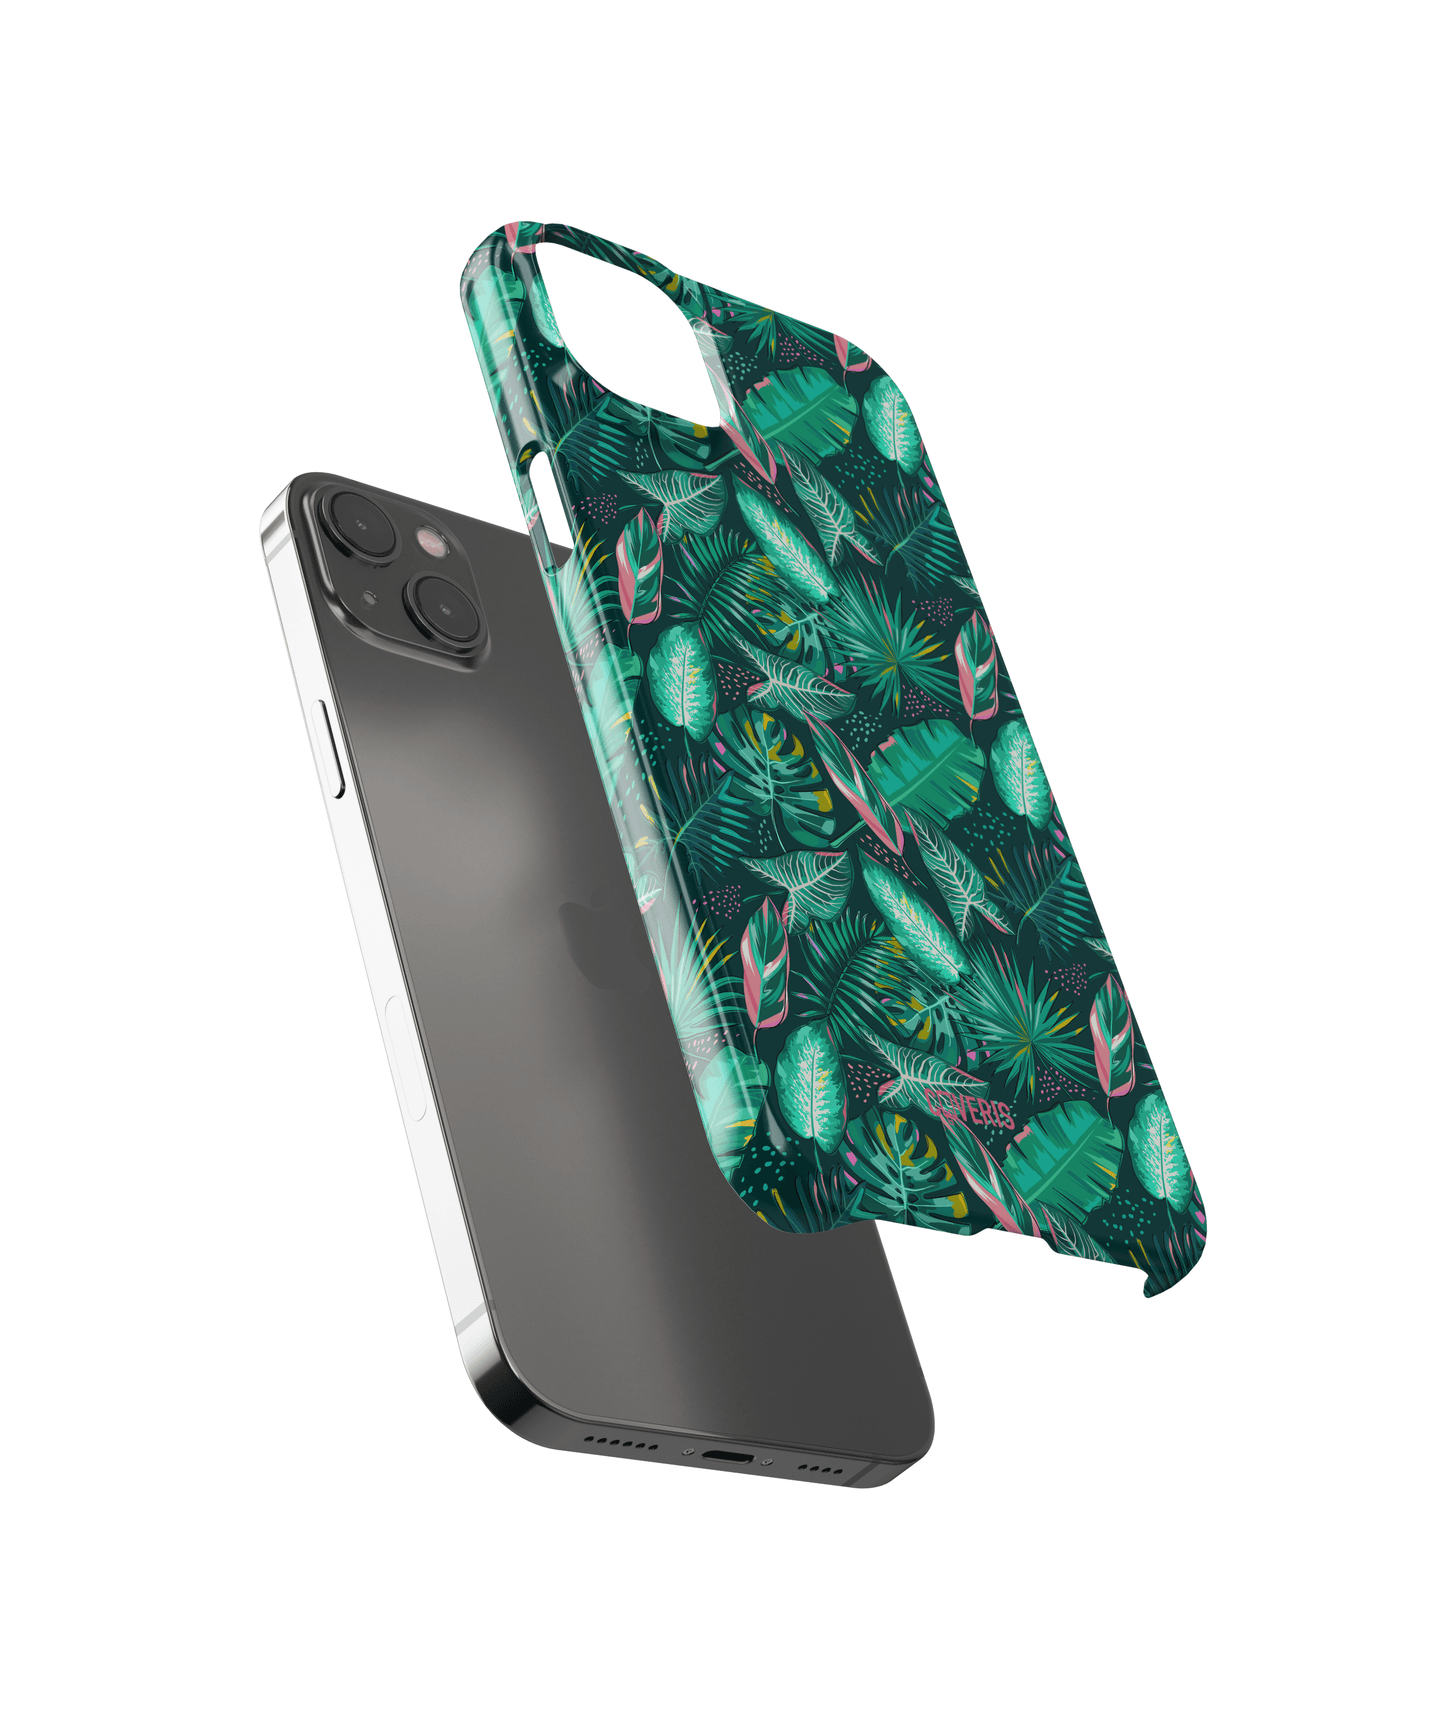 Palms - Xiaomi 10i phone case